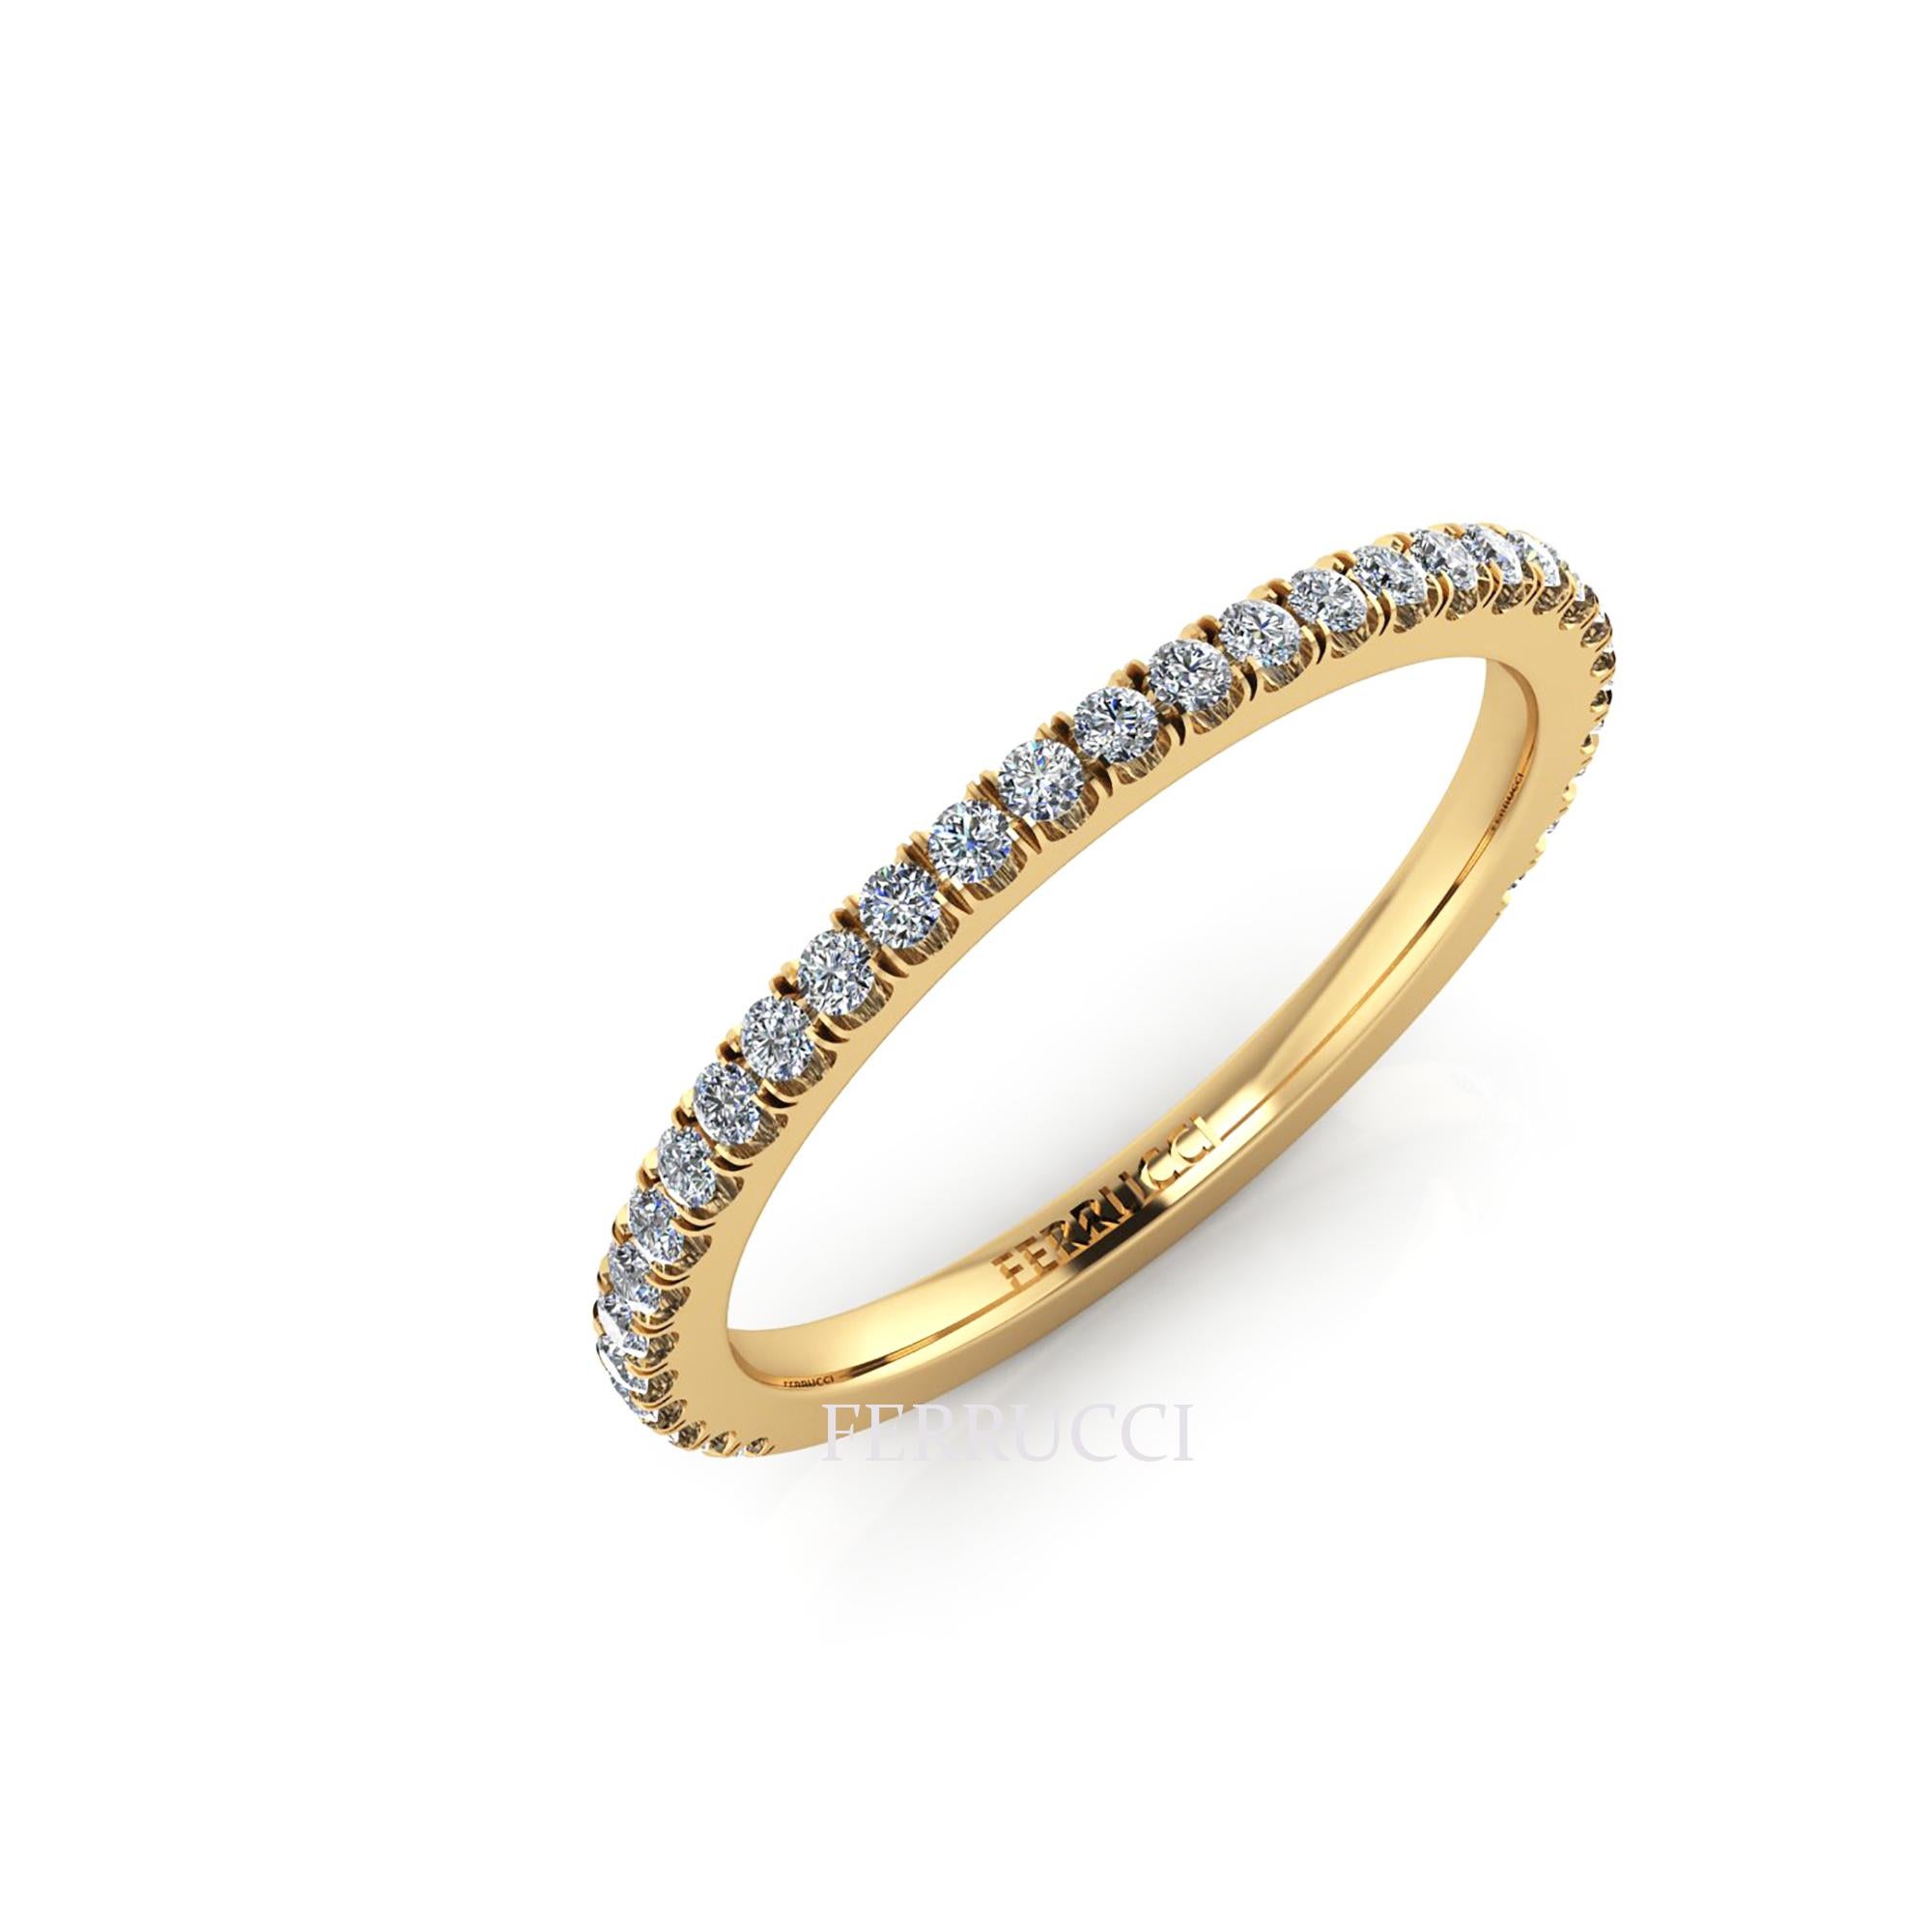 18k Gold dünnen Band Ring, stapelbar Ringe, mit etwa 0,30 Karat weißen Diamanten G Farbe, VS Klarheit, Hand gesetzt, bequeme Passform, das Band messen 1,5 mm Breite Tragen Sie einzelne oder mehrere flache Bänder für verschiedene